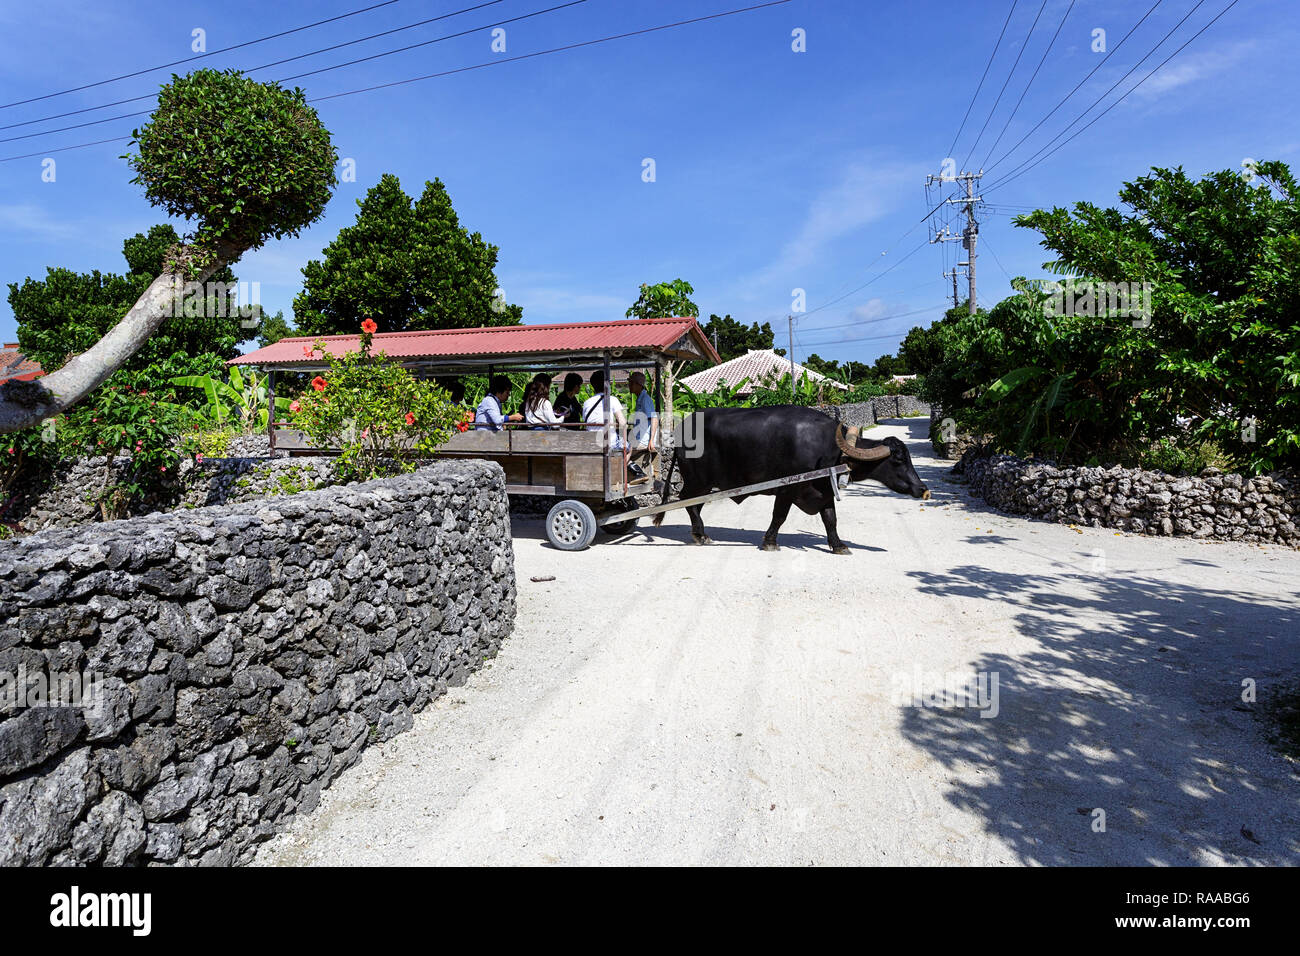 Ein wasserbüffel Karre auf dem korallensand Straßen der Taketomi Dorf auf der Insel Taketomi (Taketomijima), yaeyama Inseln, Japan. Stockfoto